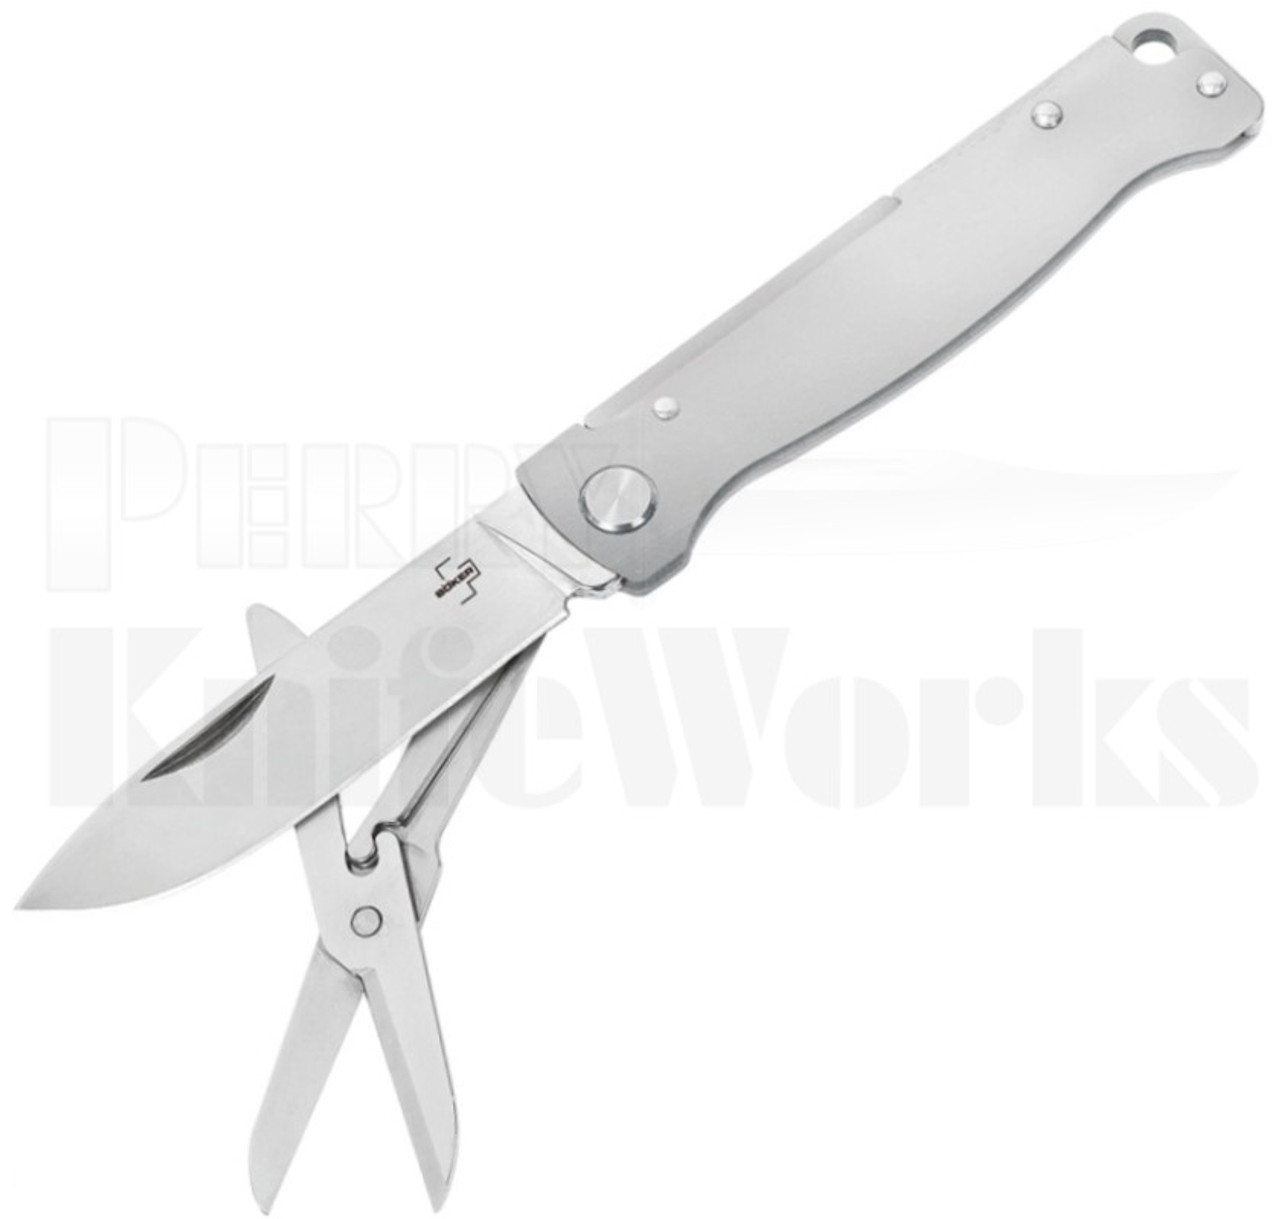 Boker Plus Atlas Slip Joint Knife Multi-Tool 01BO854 l For Sale